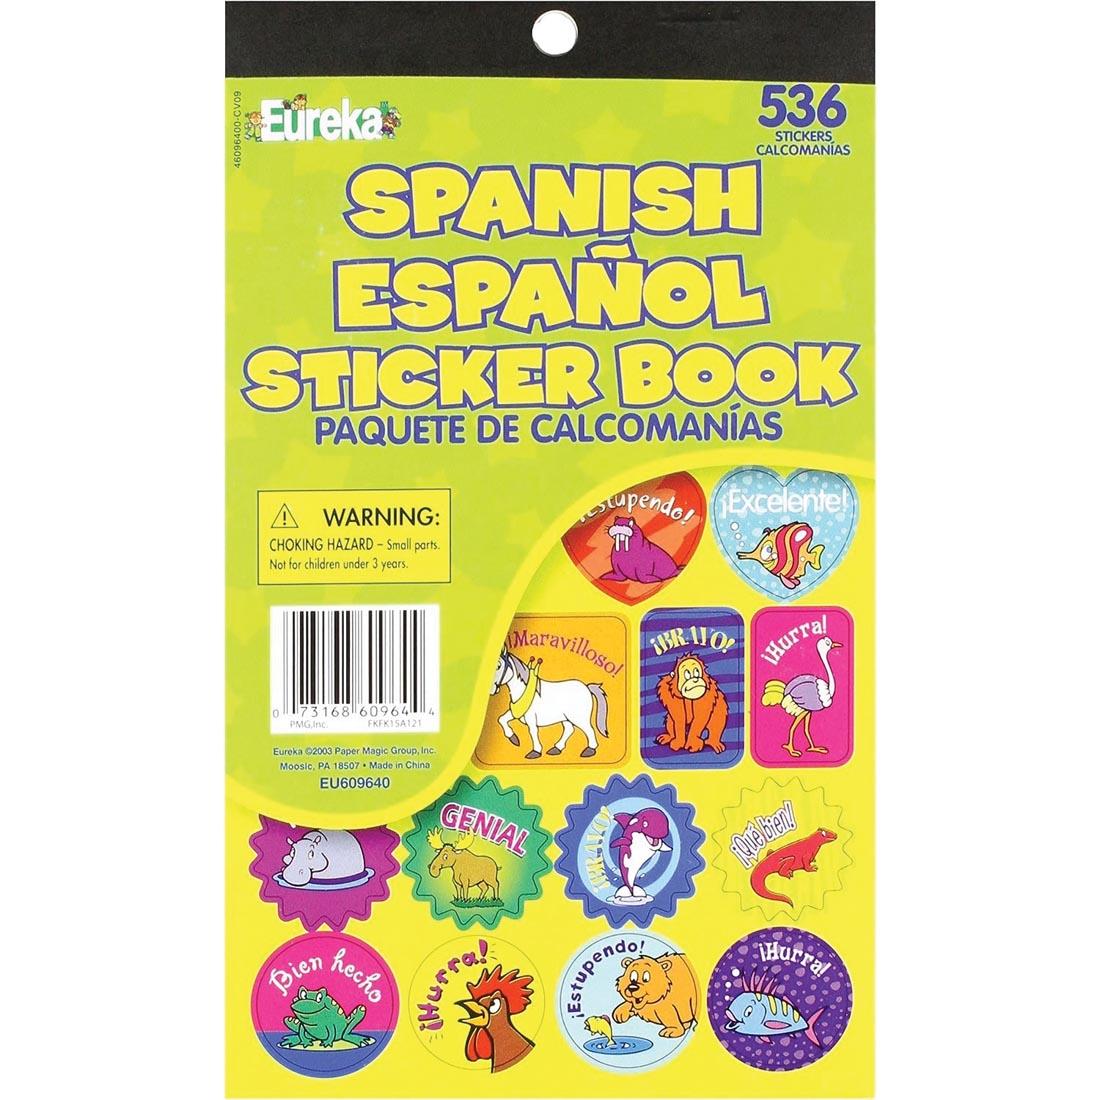 Spanish Sticker Book (Espanol Paquete de Calcomanias) by Eureka